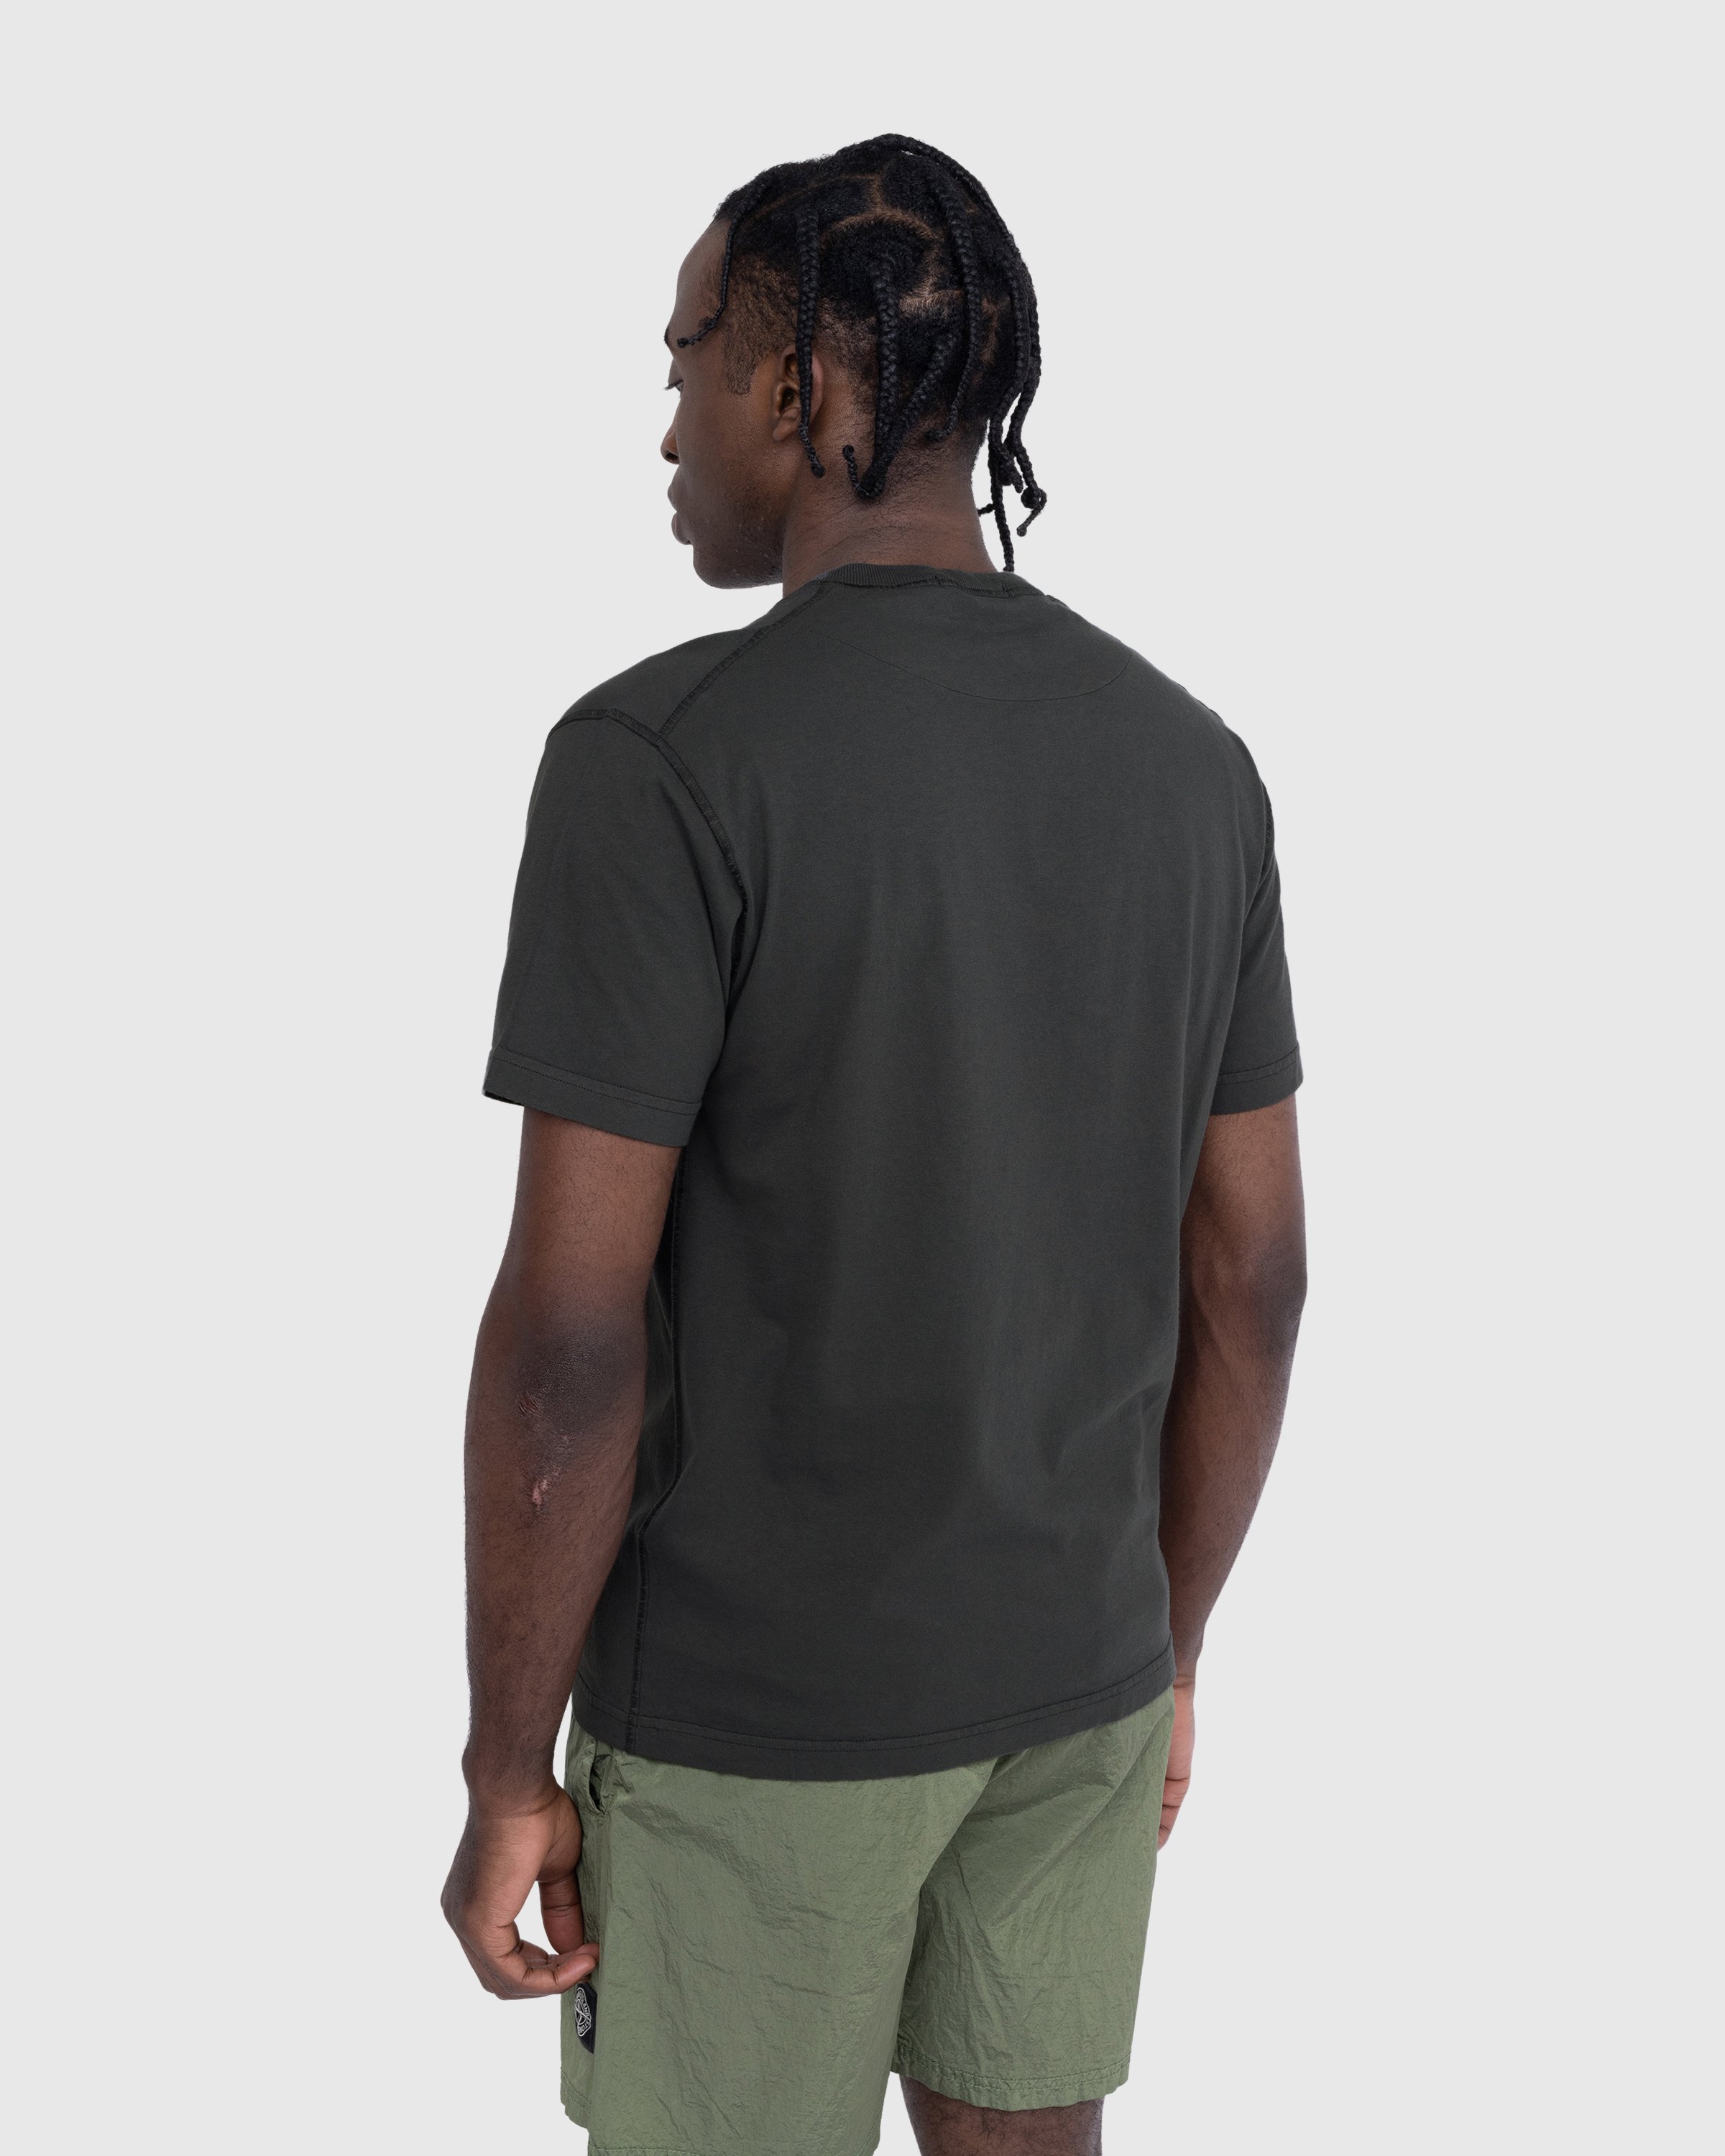 Stone Island - T-Shirt Charcoal 23757 - Clothing - Grey - Image 3